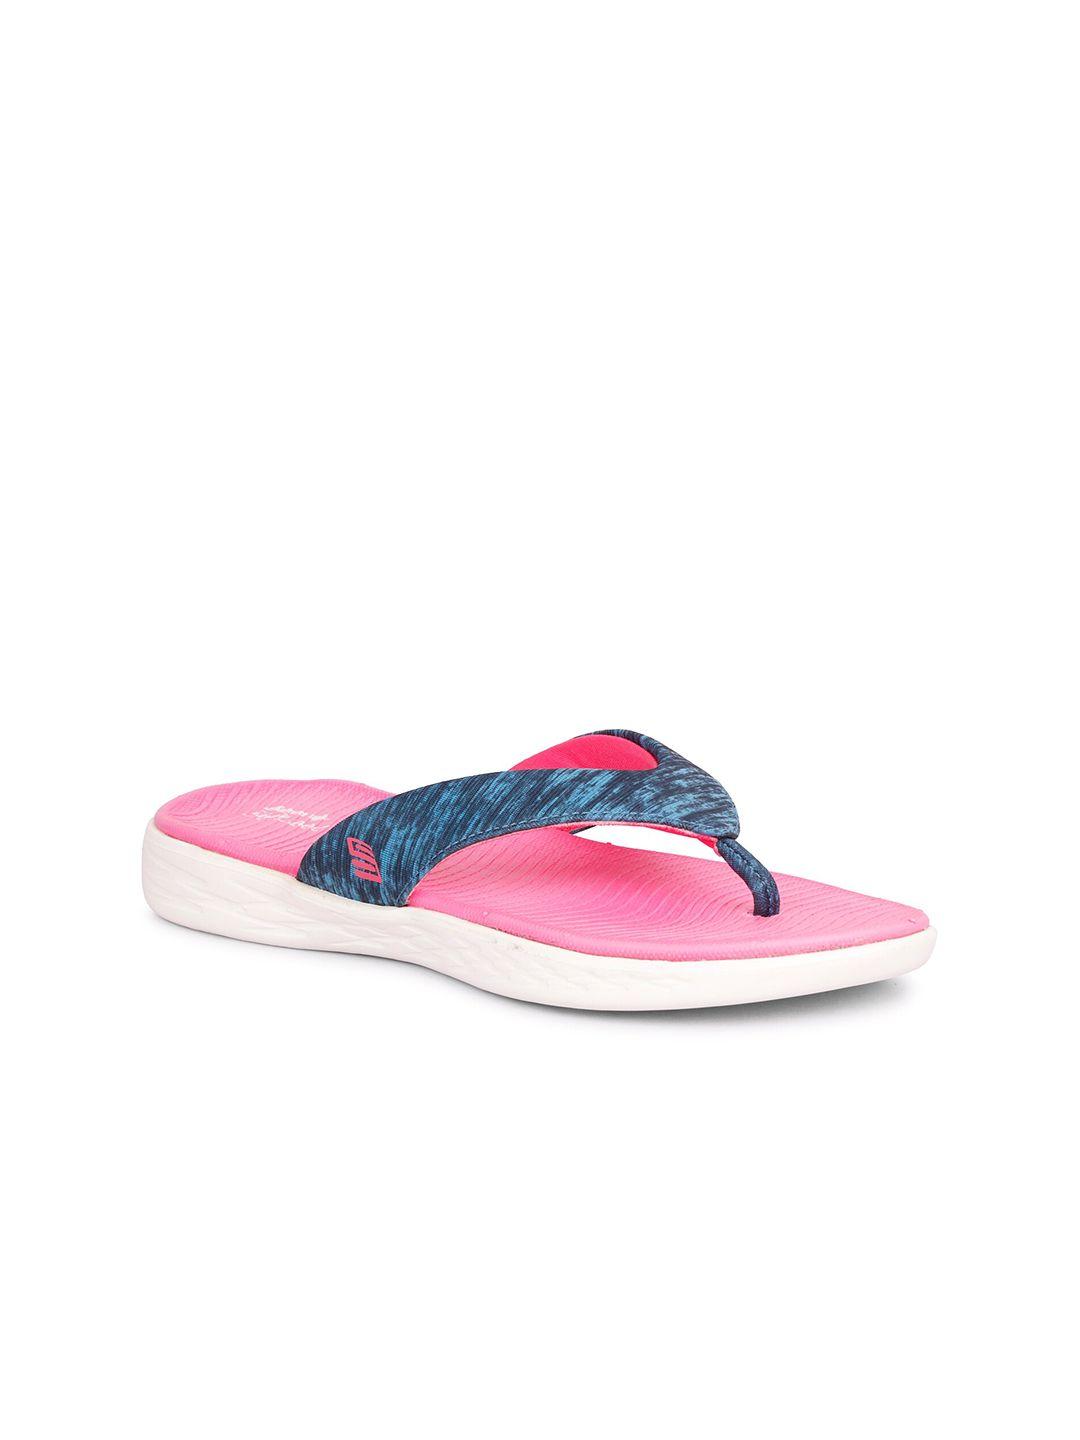 skora women blue & pink printed thong flip flops